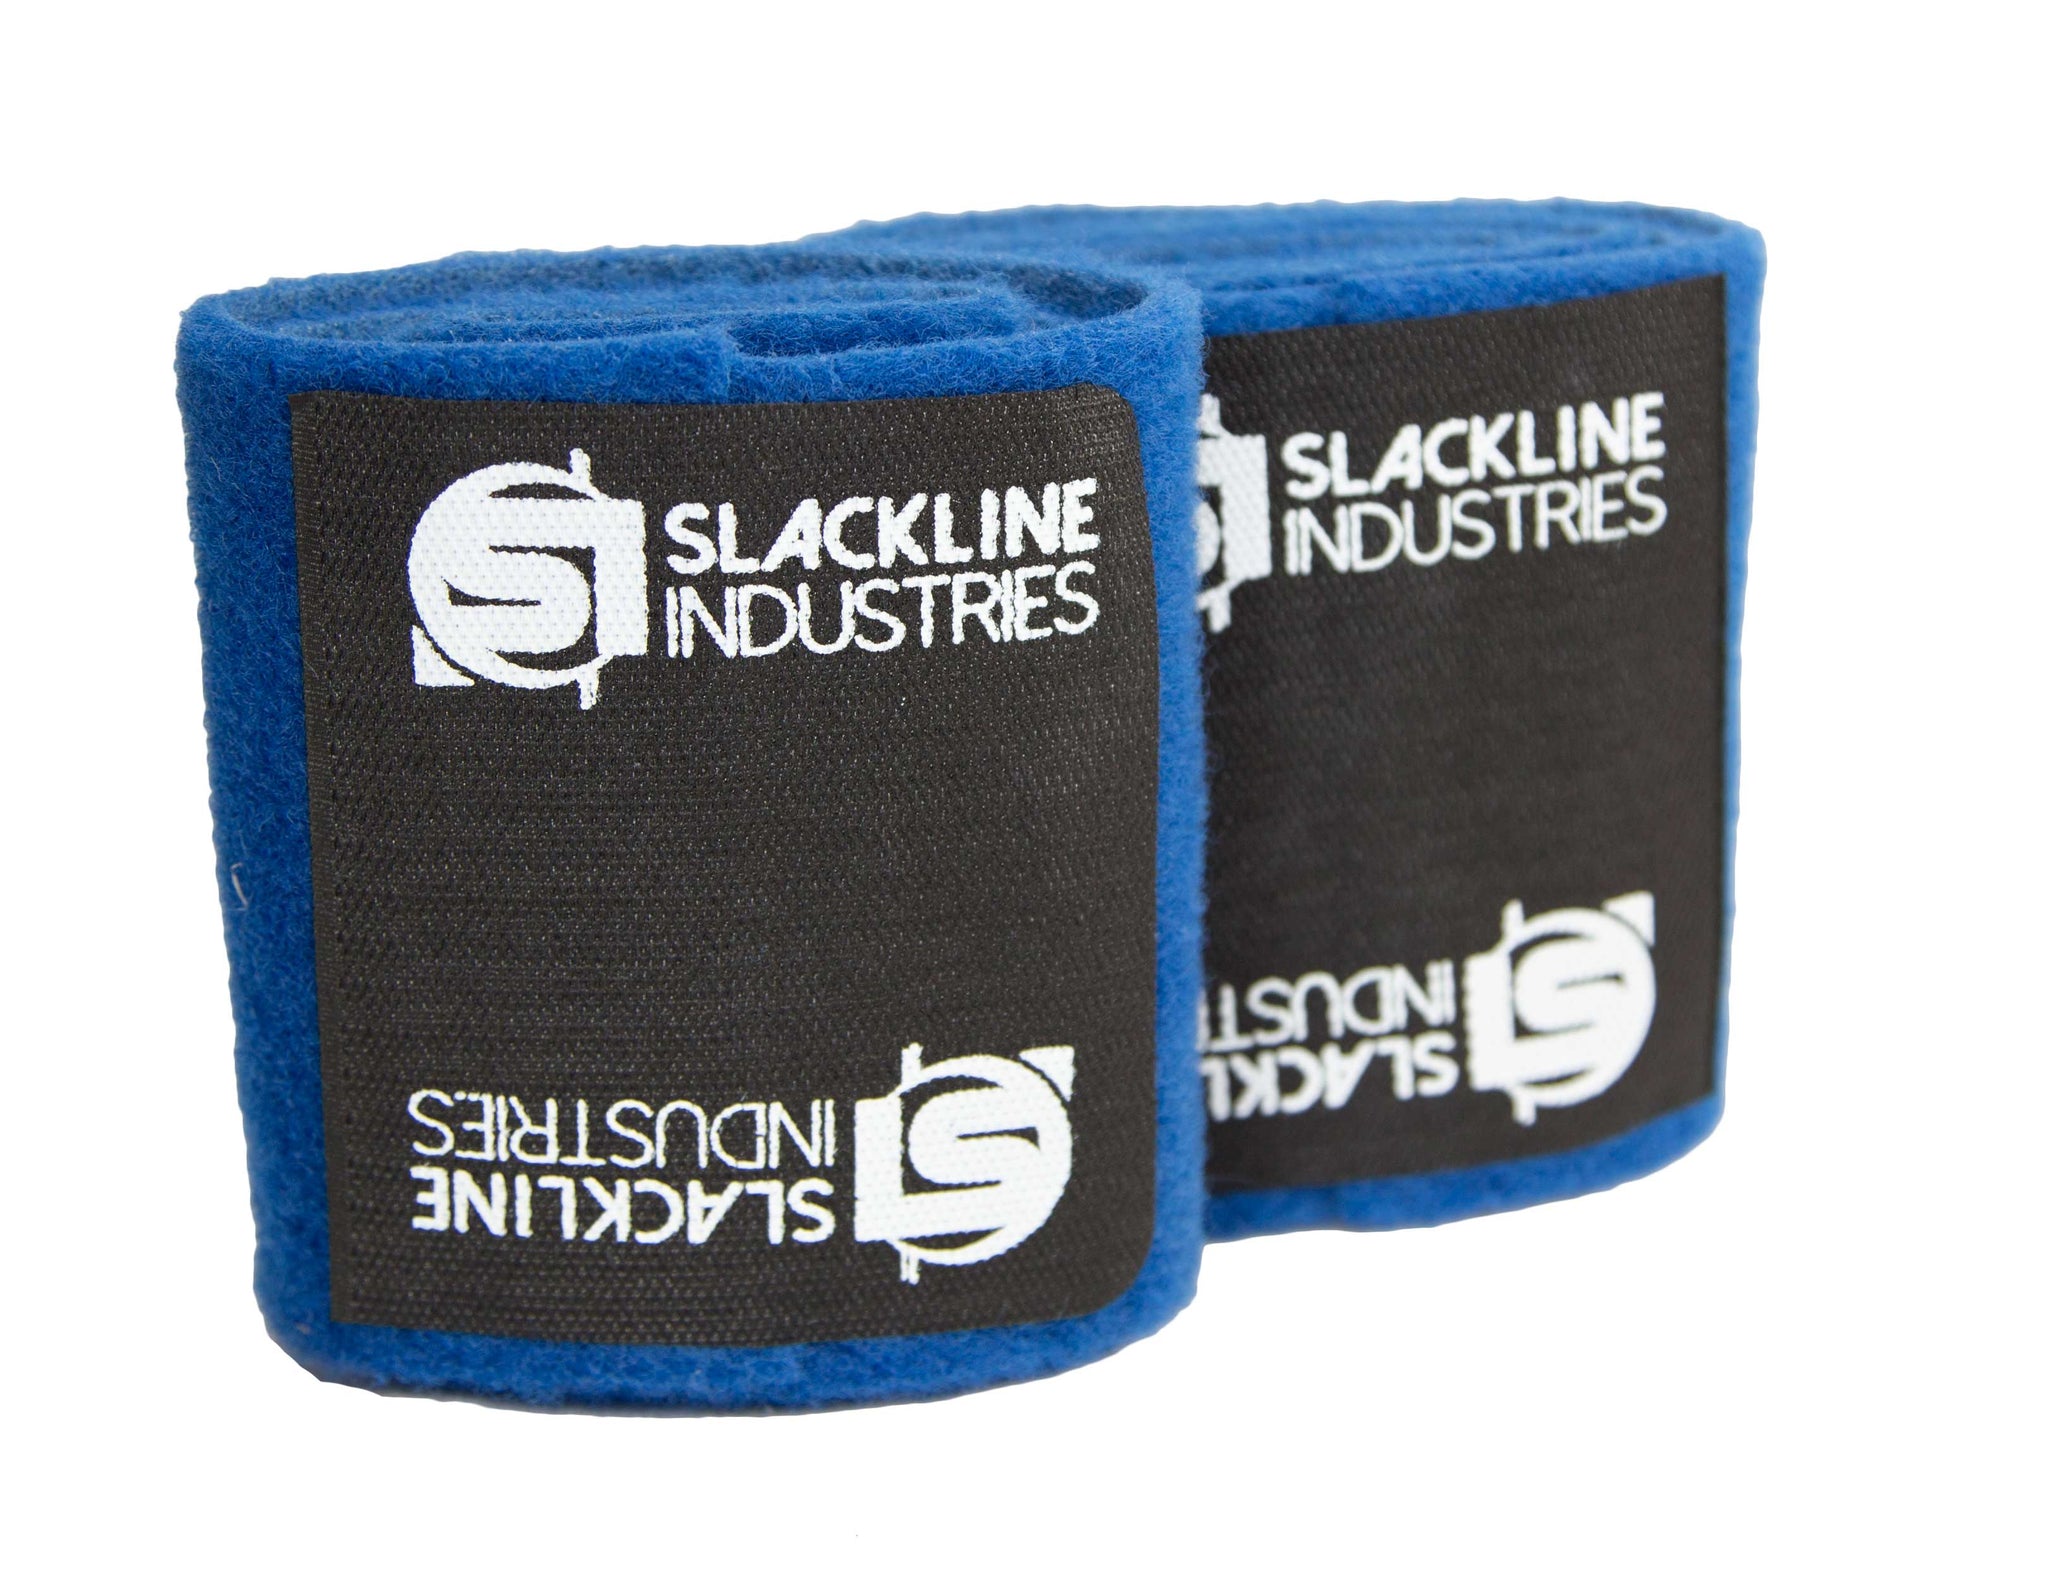 PLAY LINE KIT – Slackline Industries USA